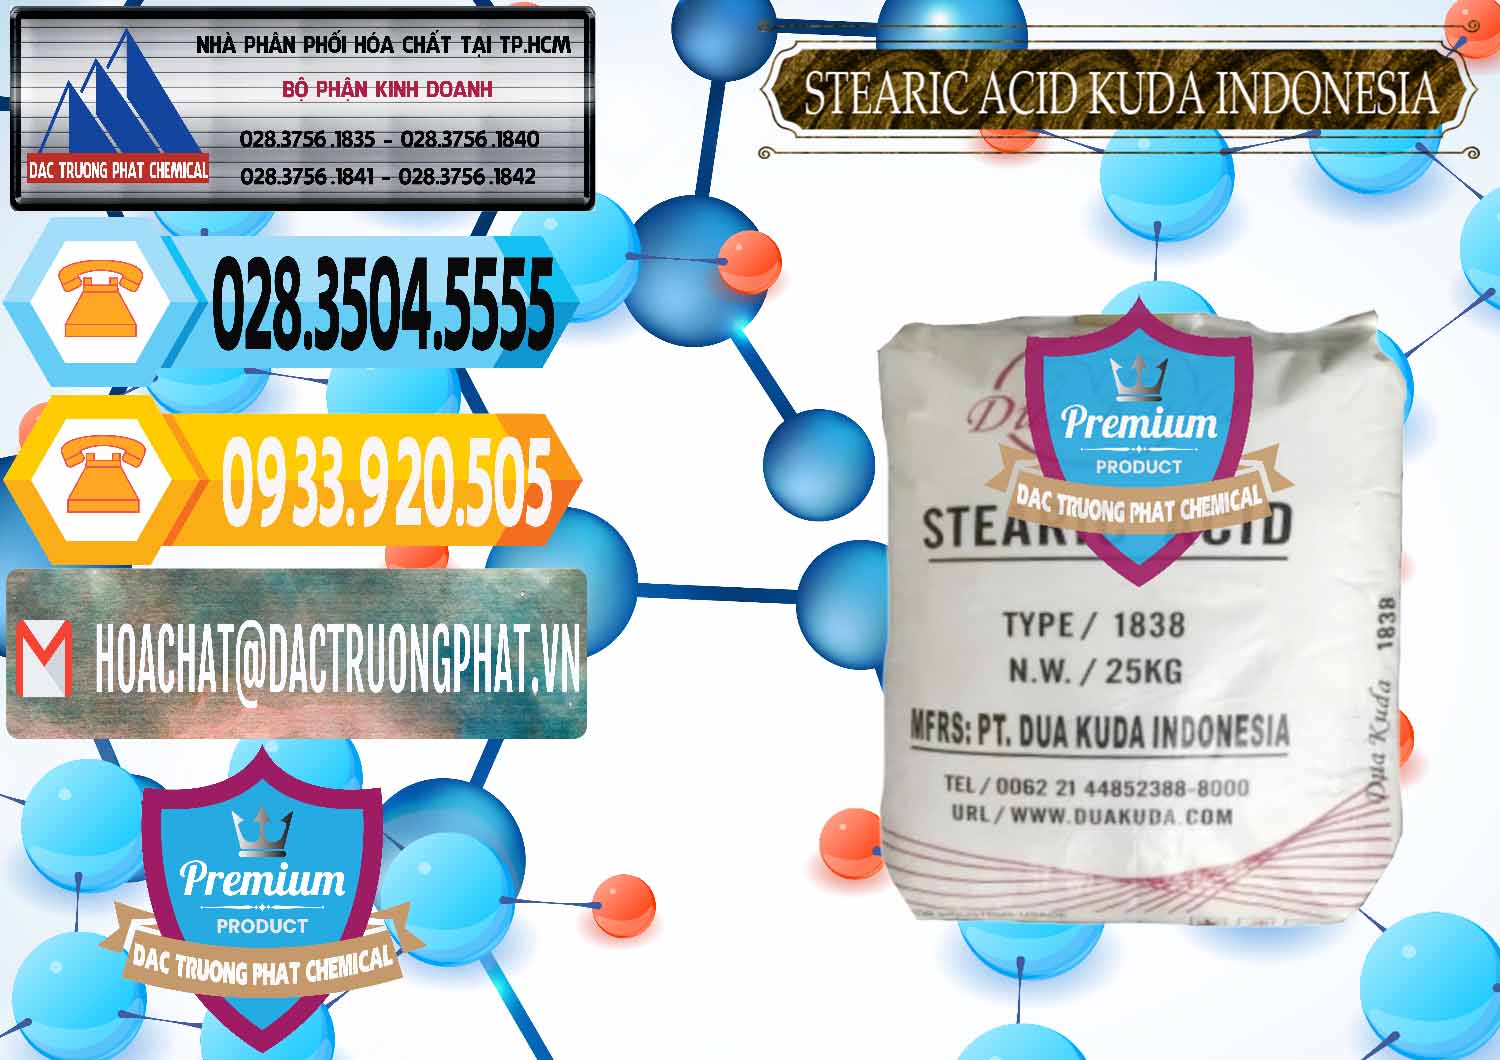 Cty bán _ phân phối Axit Stearic - Stearic Acid Dua Kuda Indonesia - 0388 - Cty chuyên kinh doanh ( phân phối ) hóa chất tại TP.HCM - hoachattayrua.net